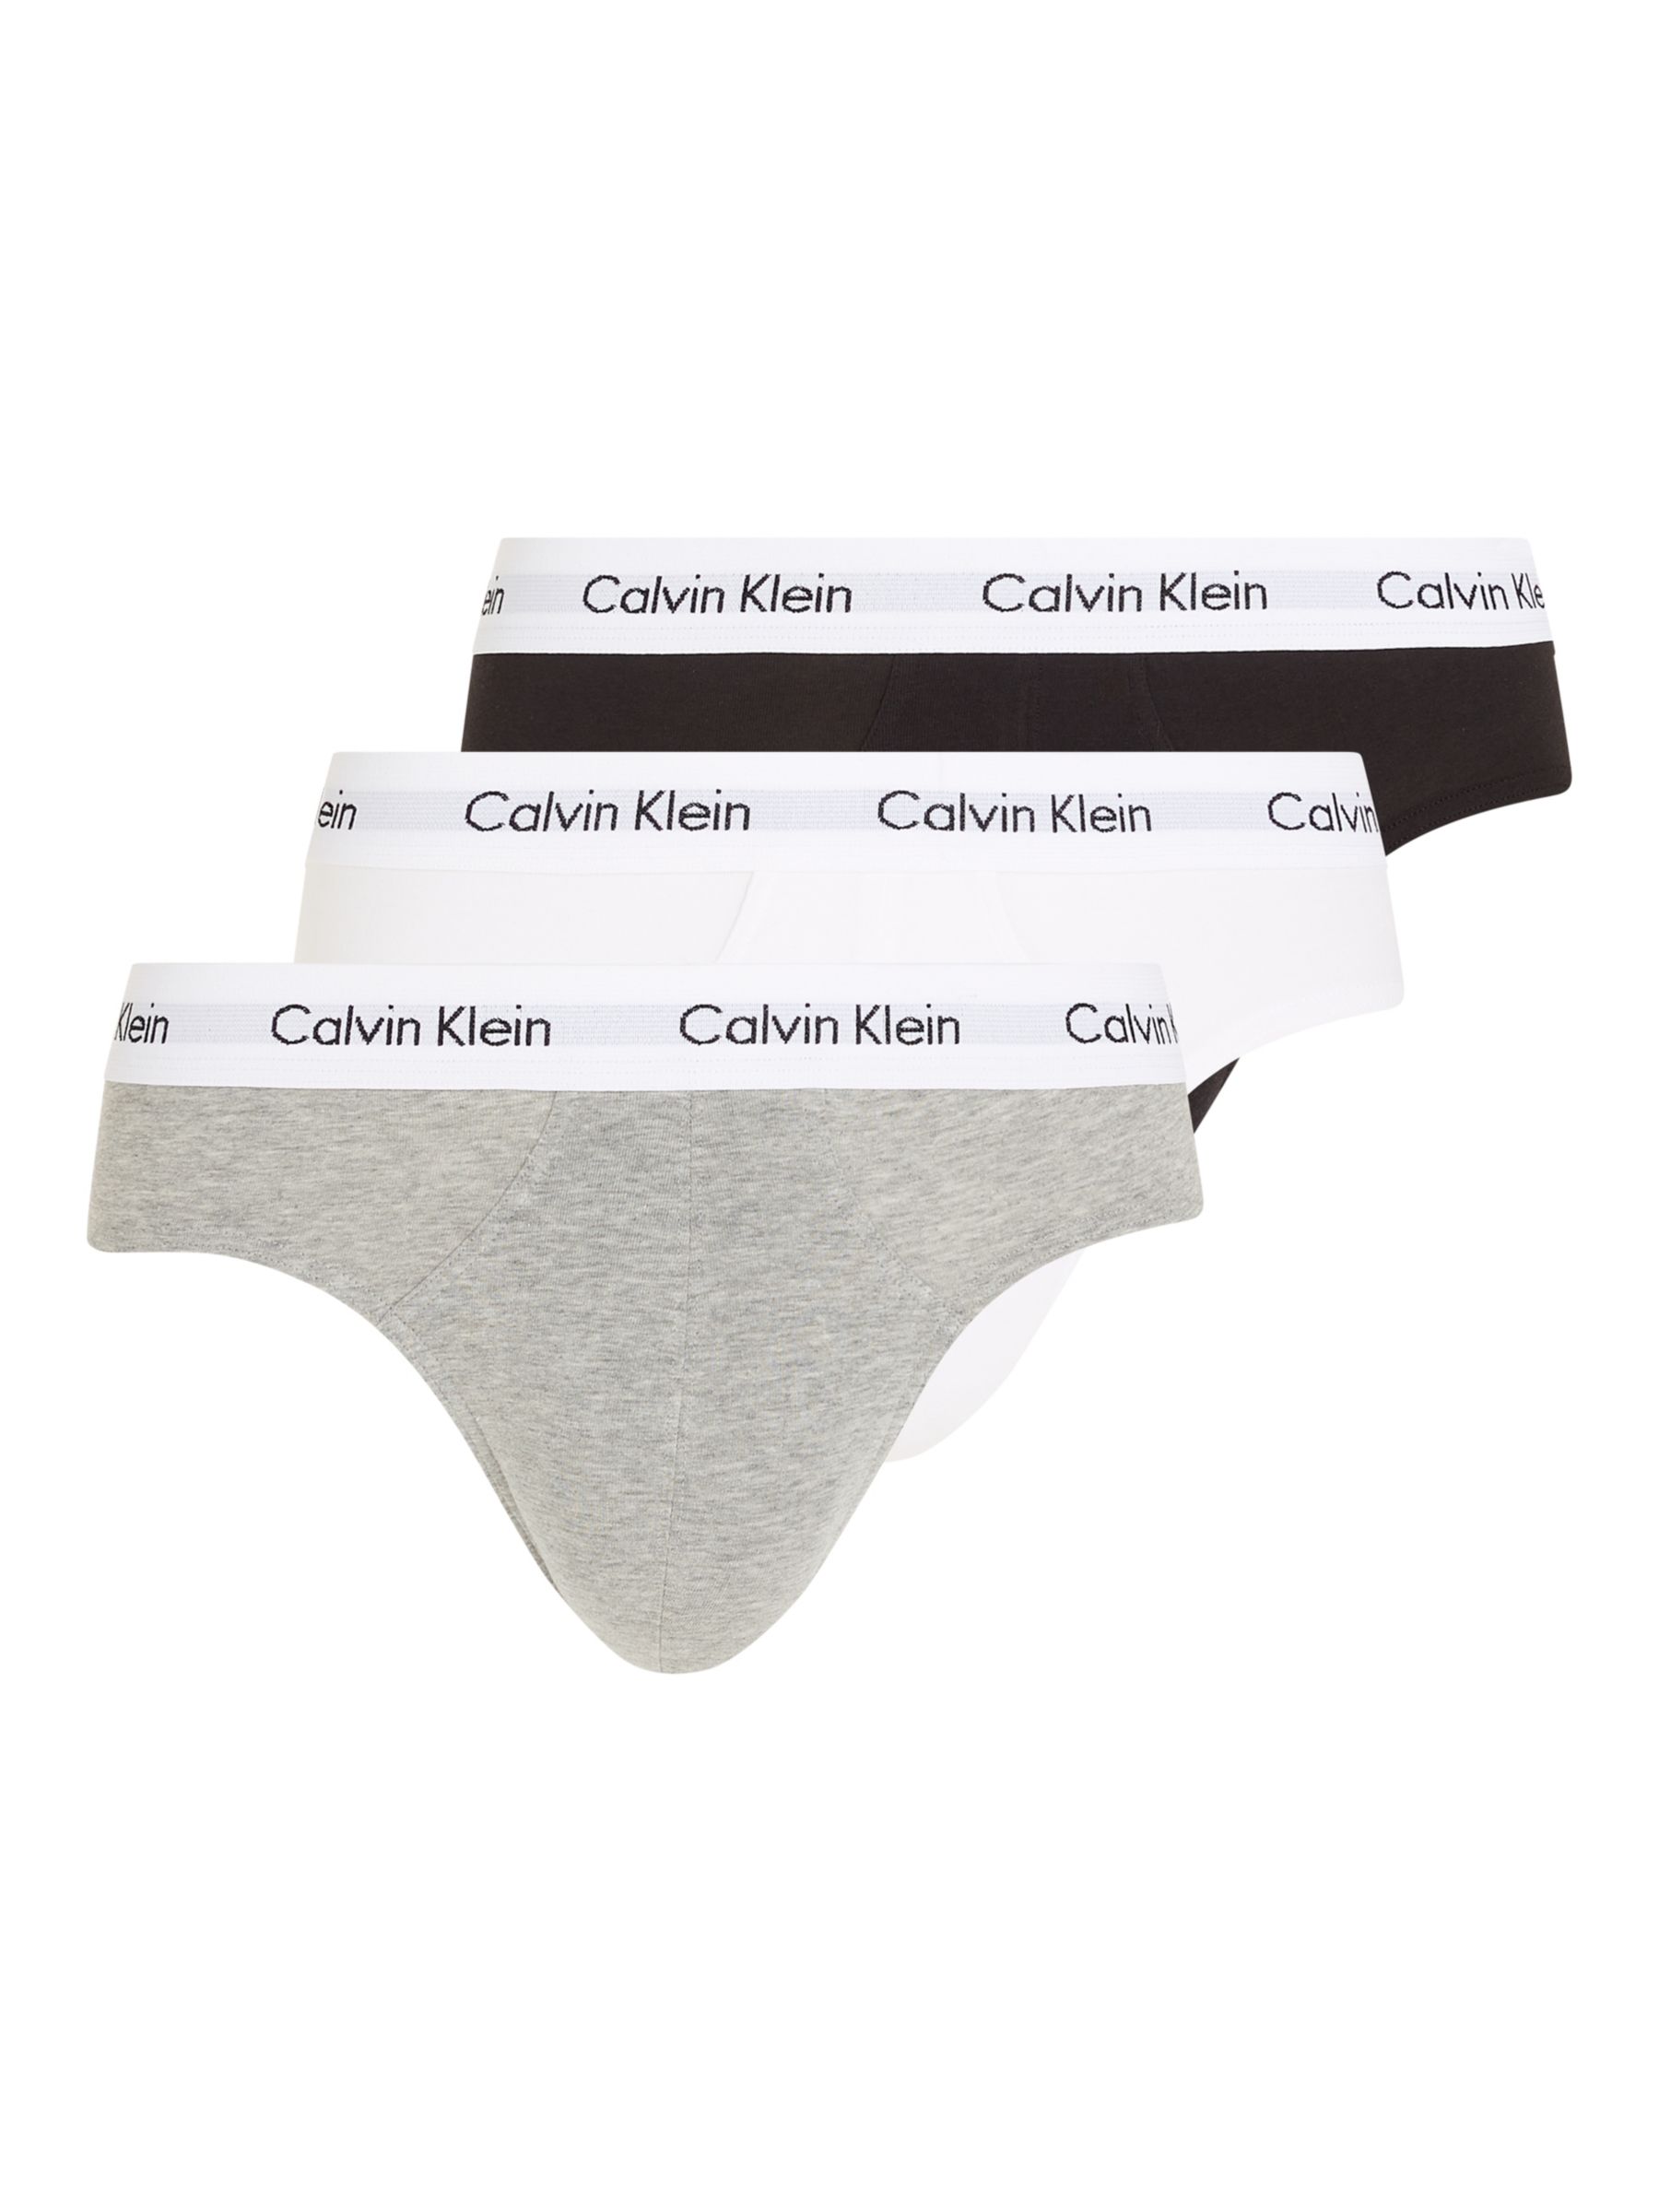 Calvin Klein Underwear Grey on SALE